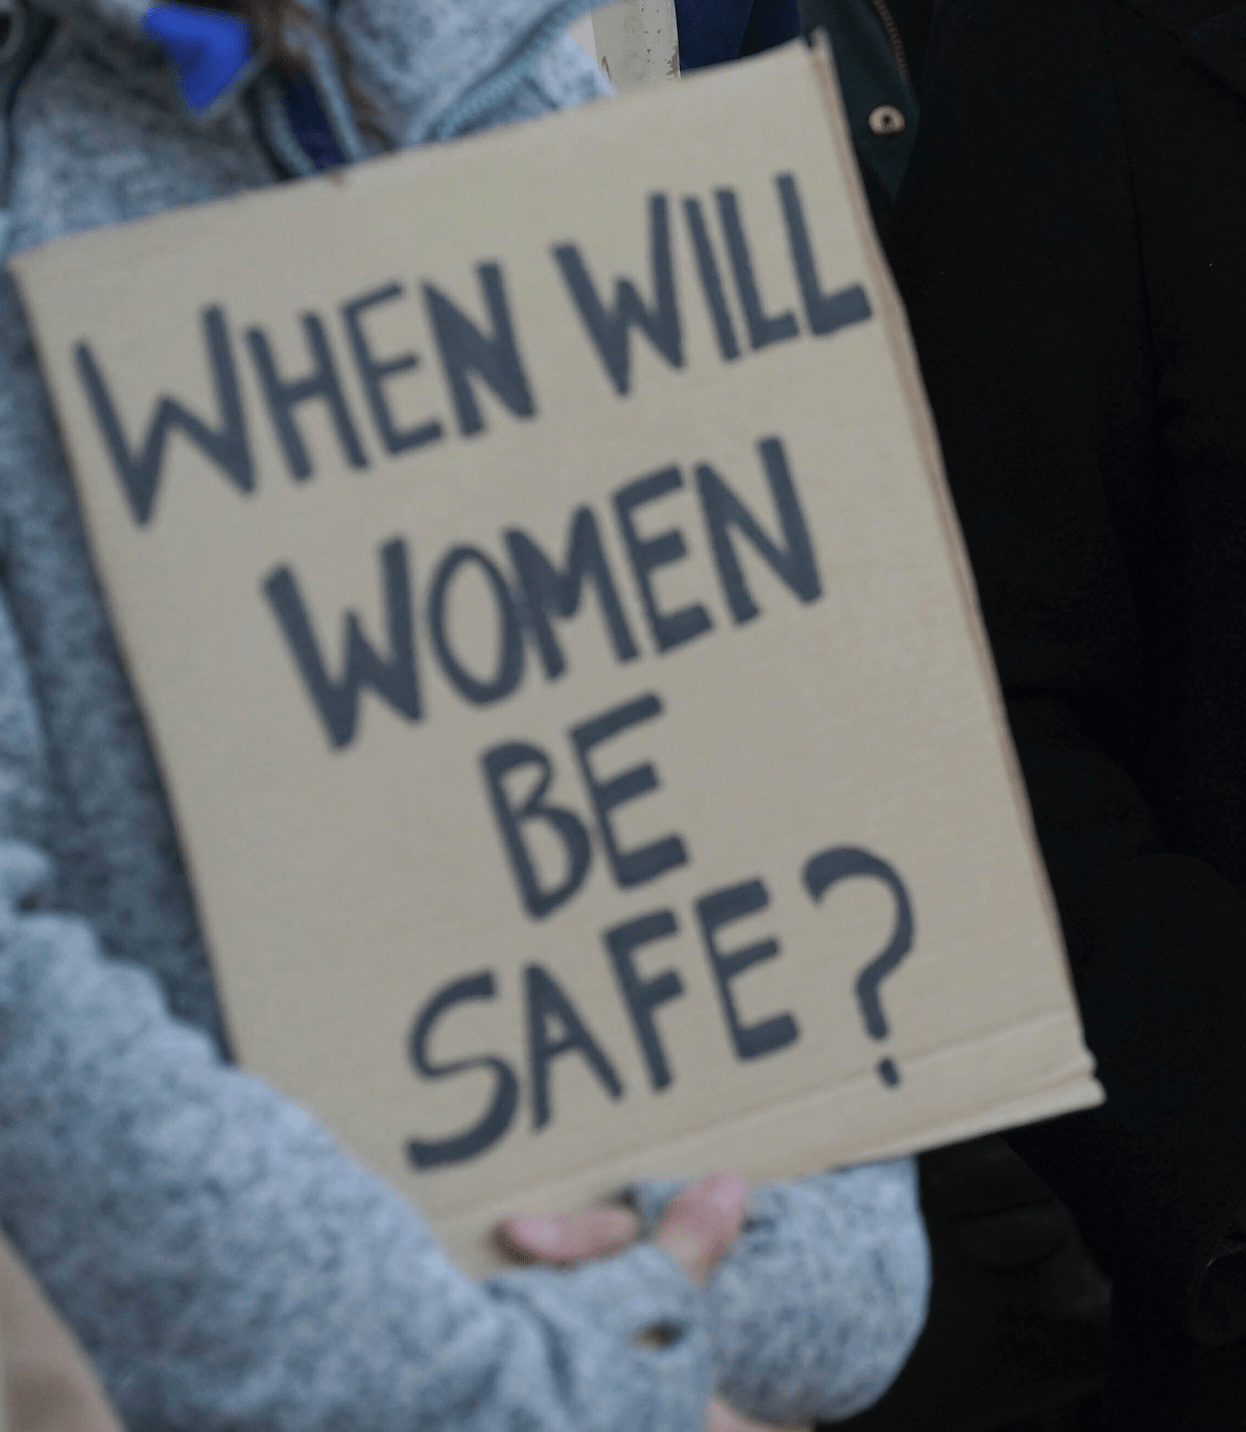 When will women feel safe?